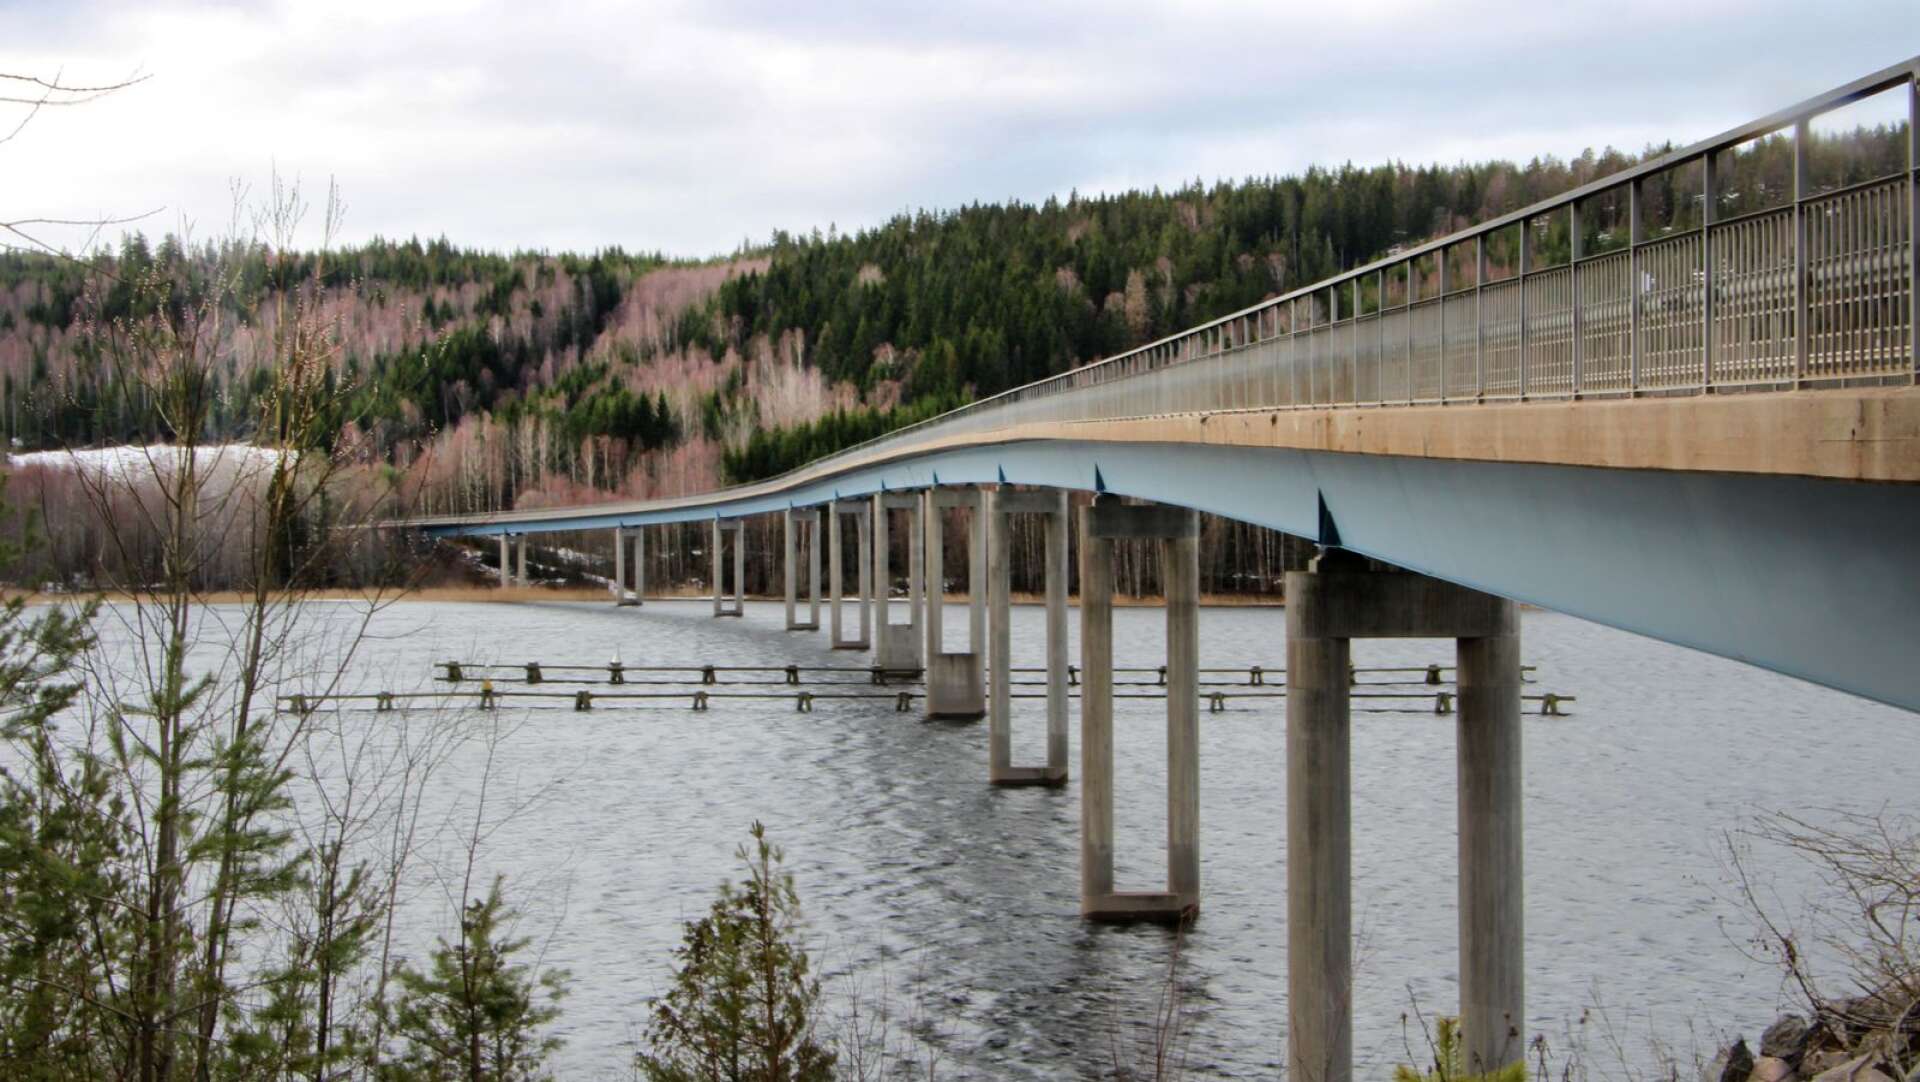 Cirka 12,5 miljoner kronor beräknas renoveringen av Skasåsbron kosta. Bron som invigdes 1993 är med sin välvda form ett populärt fotomotiv.